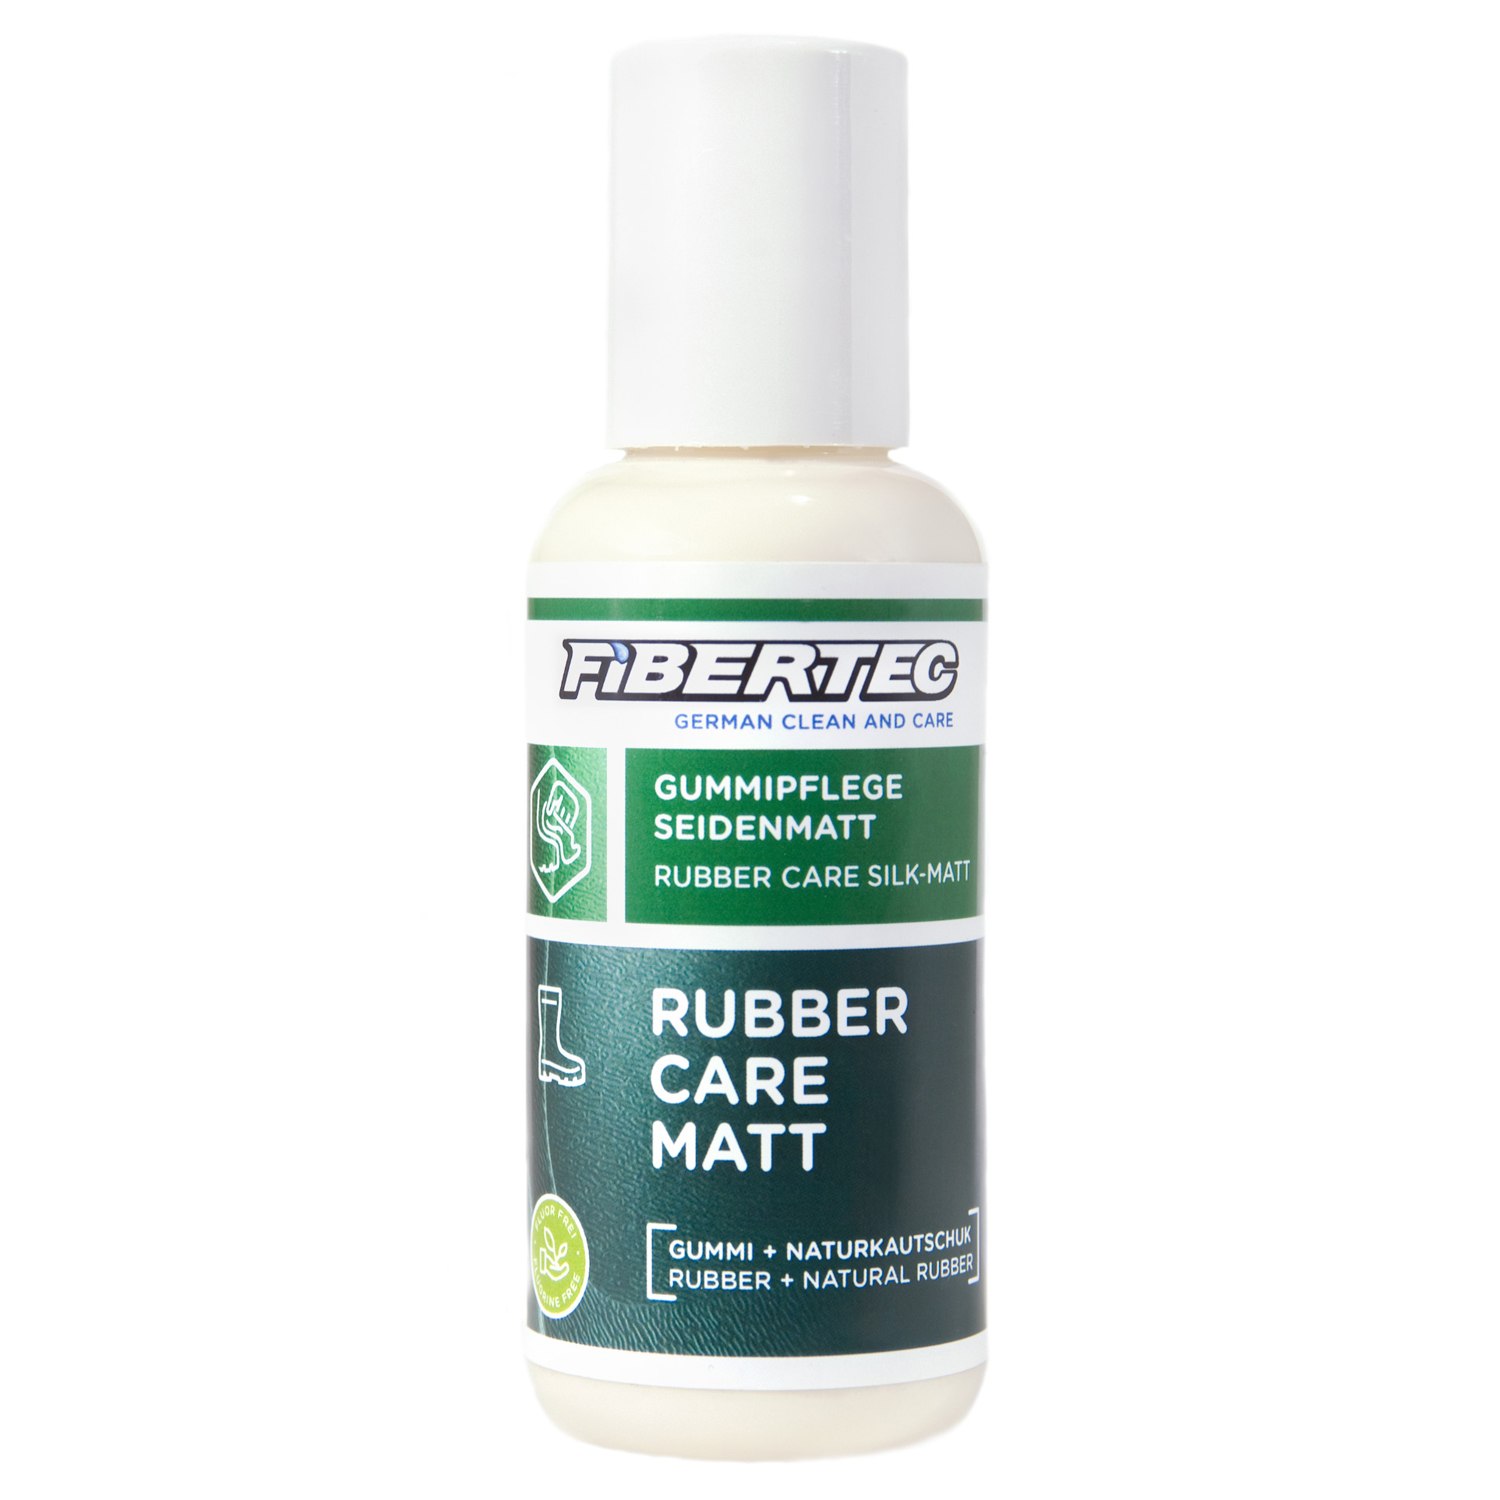 Productfoto van Fibertec Rubber Care Eco Matt 100 ml